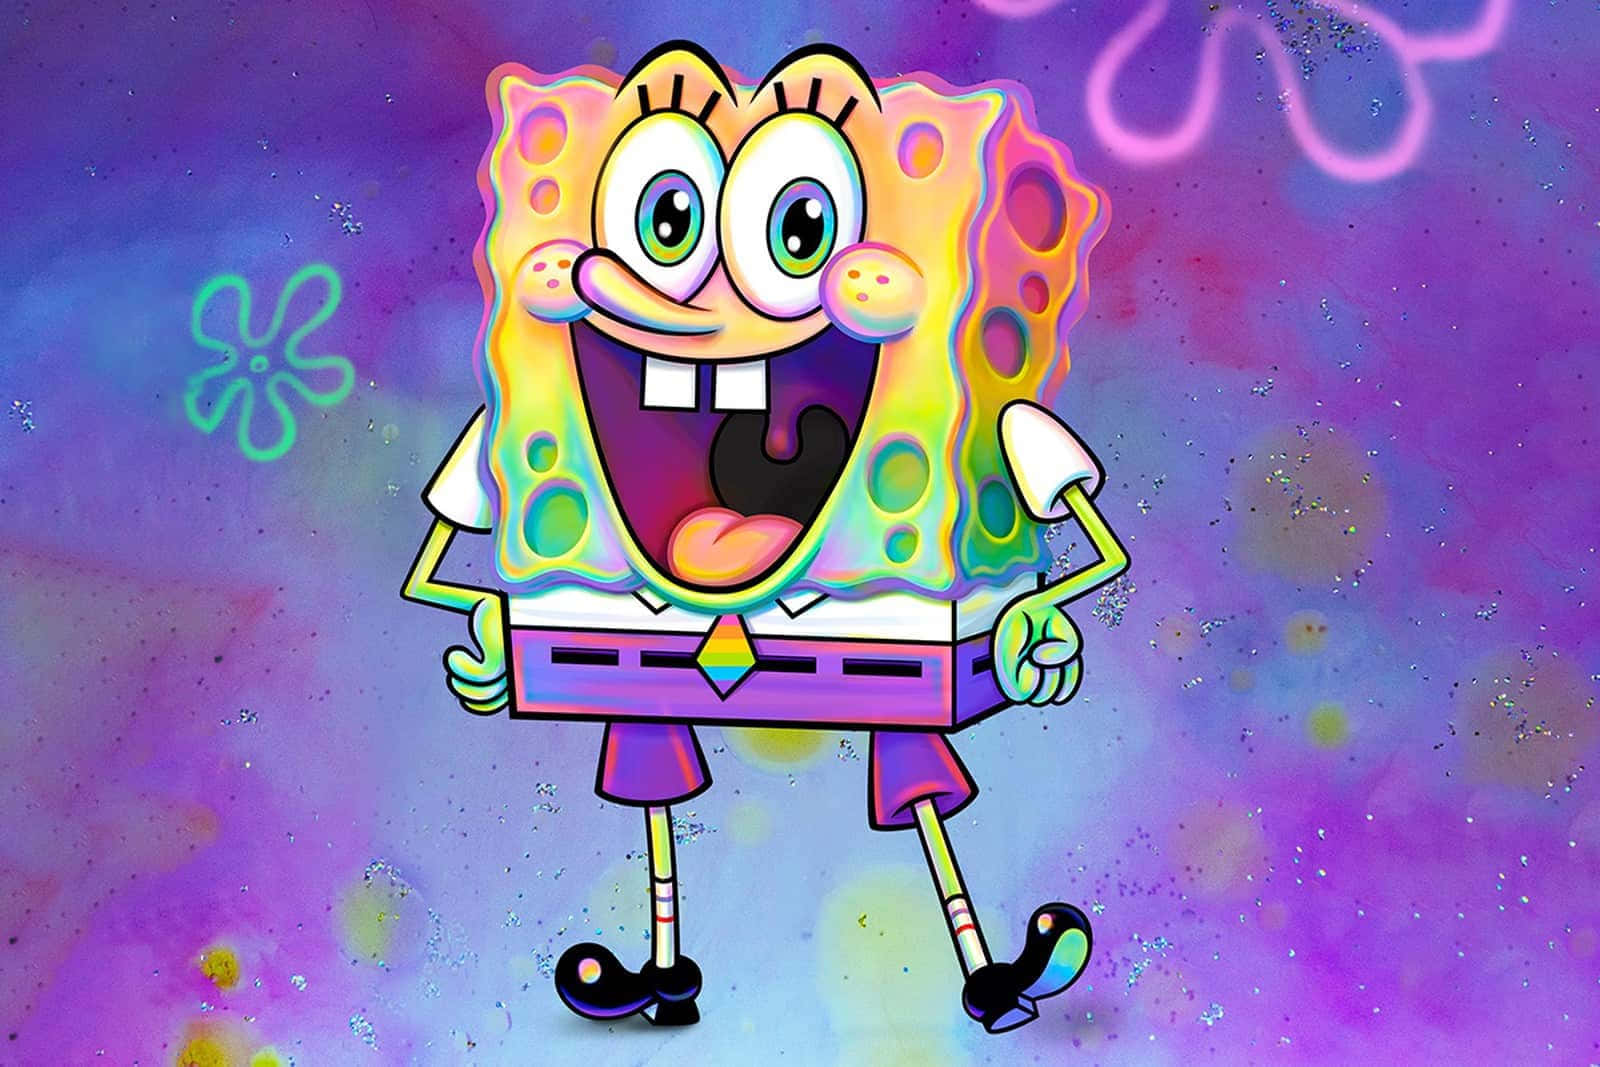 Smiling Aesthetic Spongebob SquarePants Wallpaper